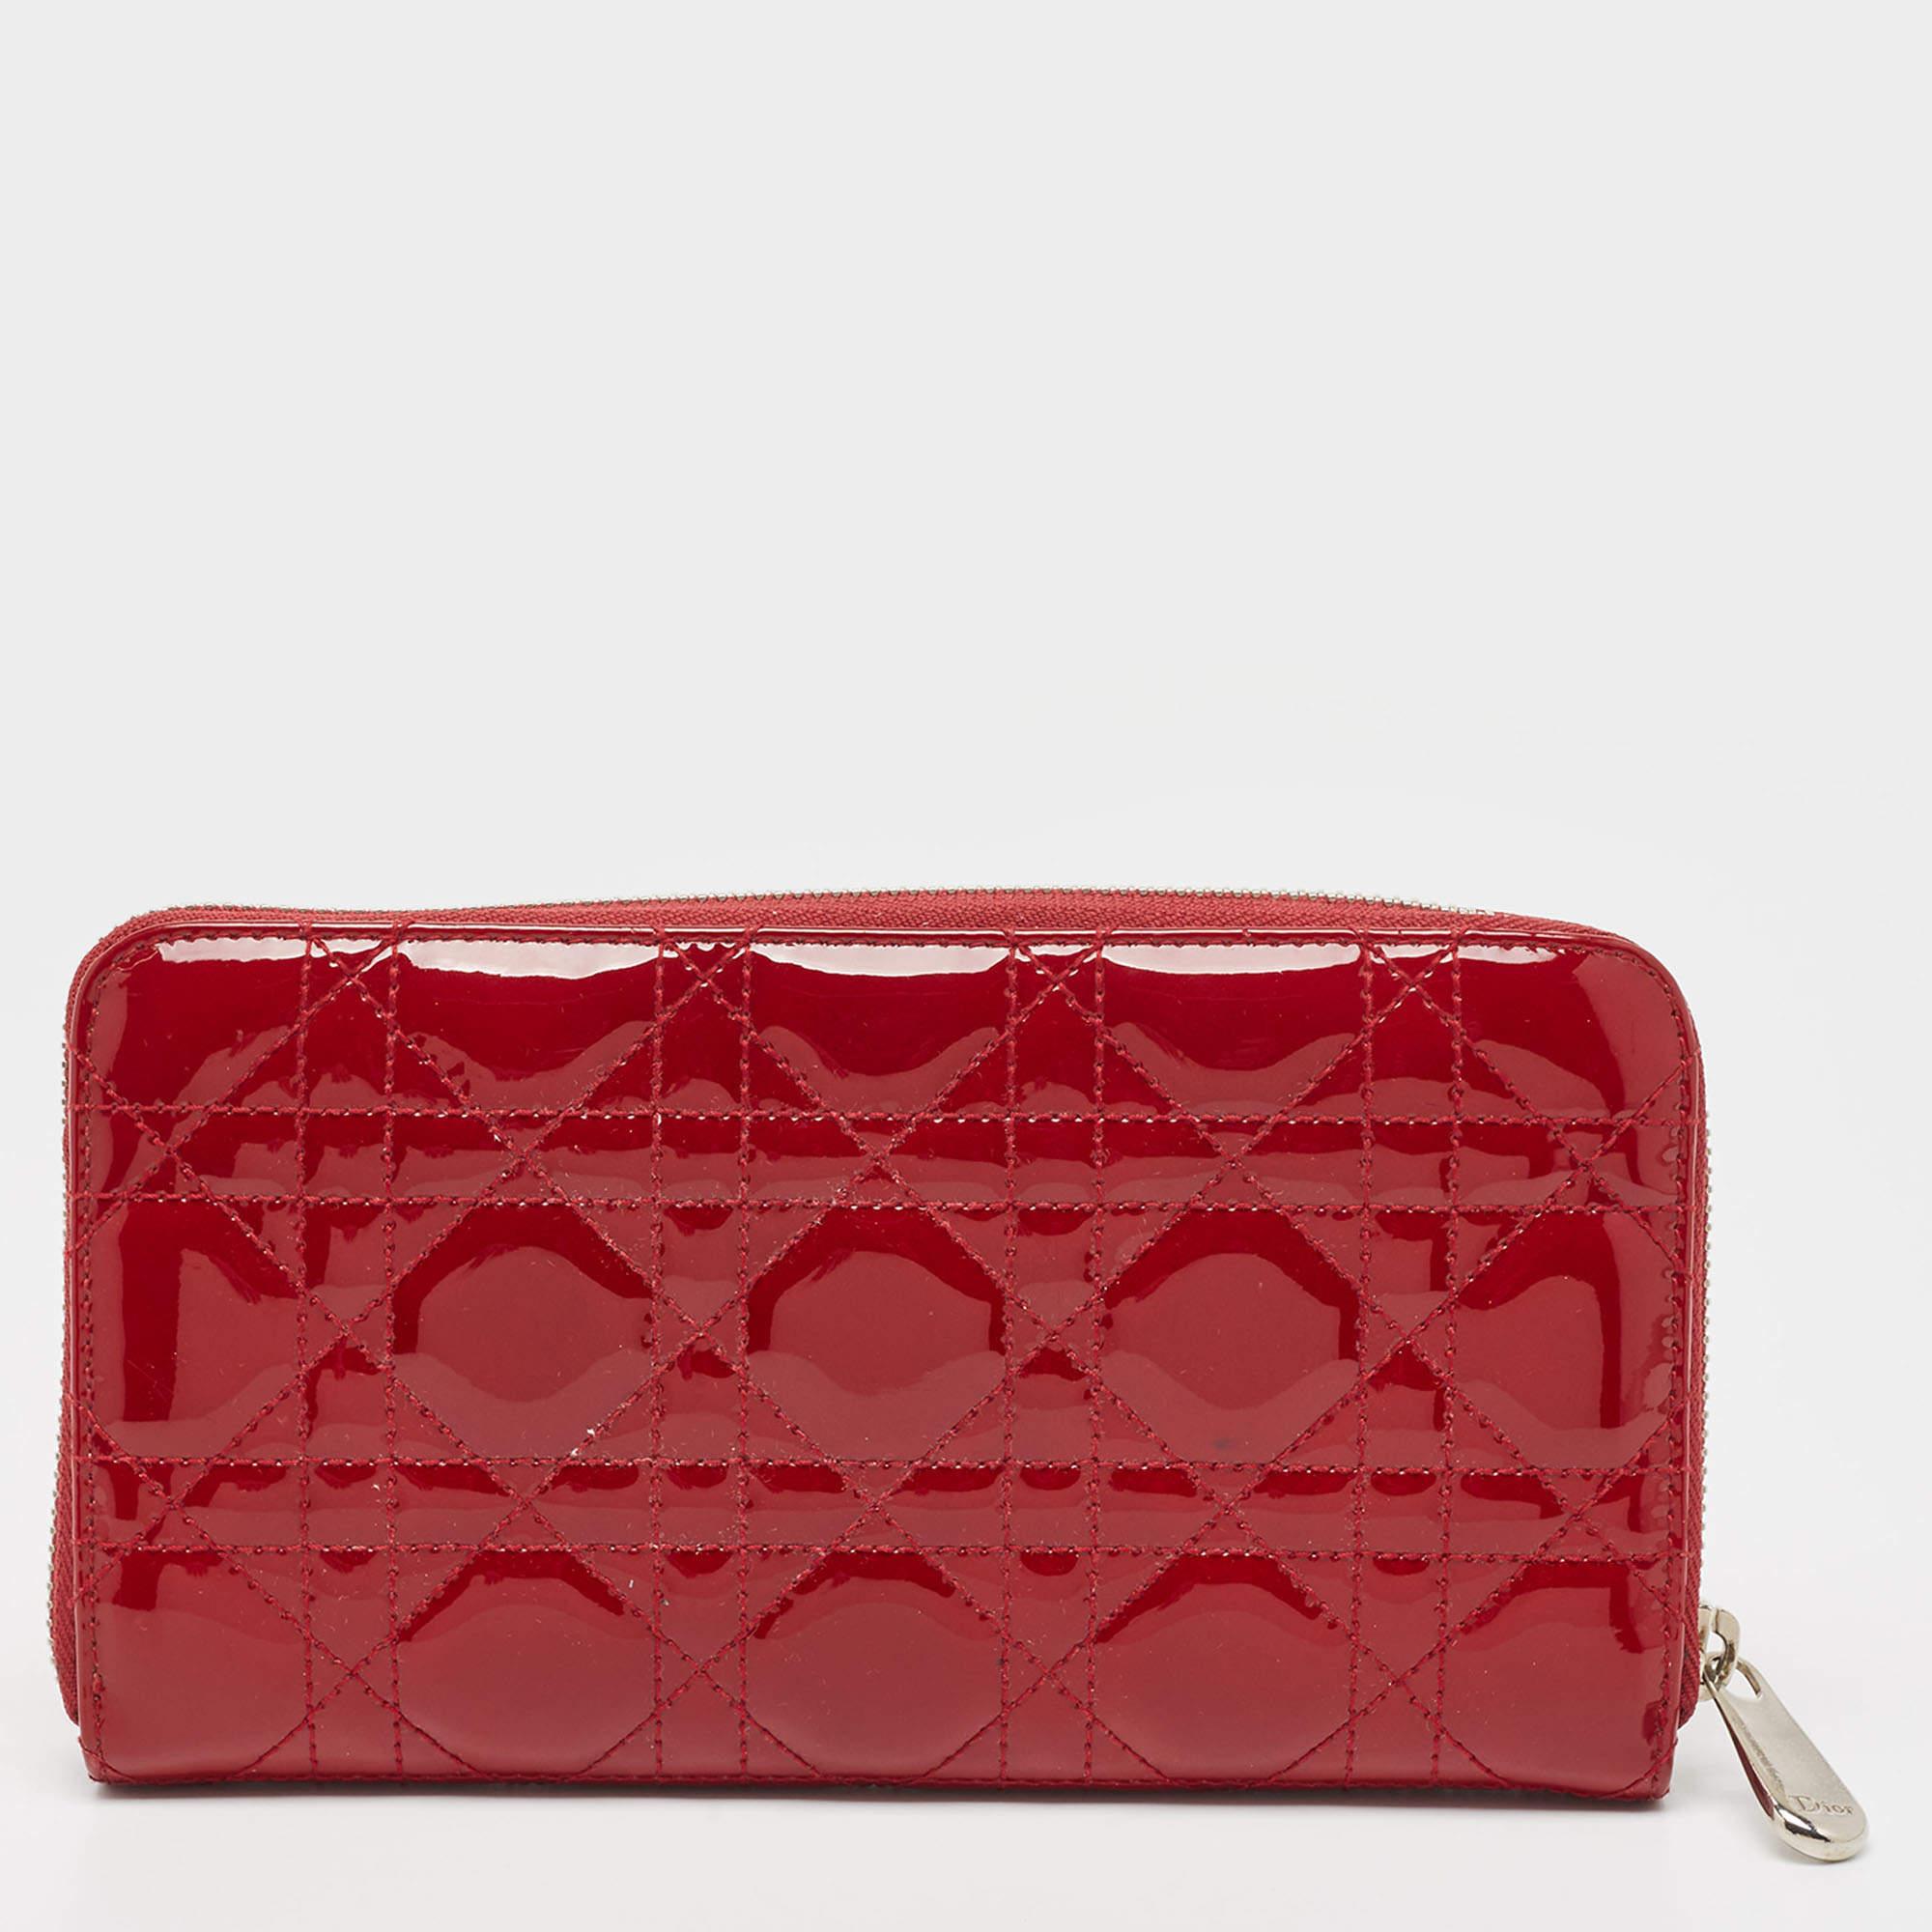 Élevez votre élégance quotidienne avec ce portefeuille rouge Dior. Fabriqué avec soin à partir de matériaux de première qualité, il allie harmonieusement style, fonctionnalité et sophistication, ce qui en fait un excellent choix.

